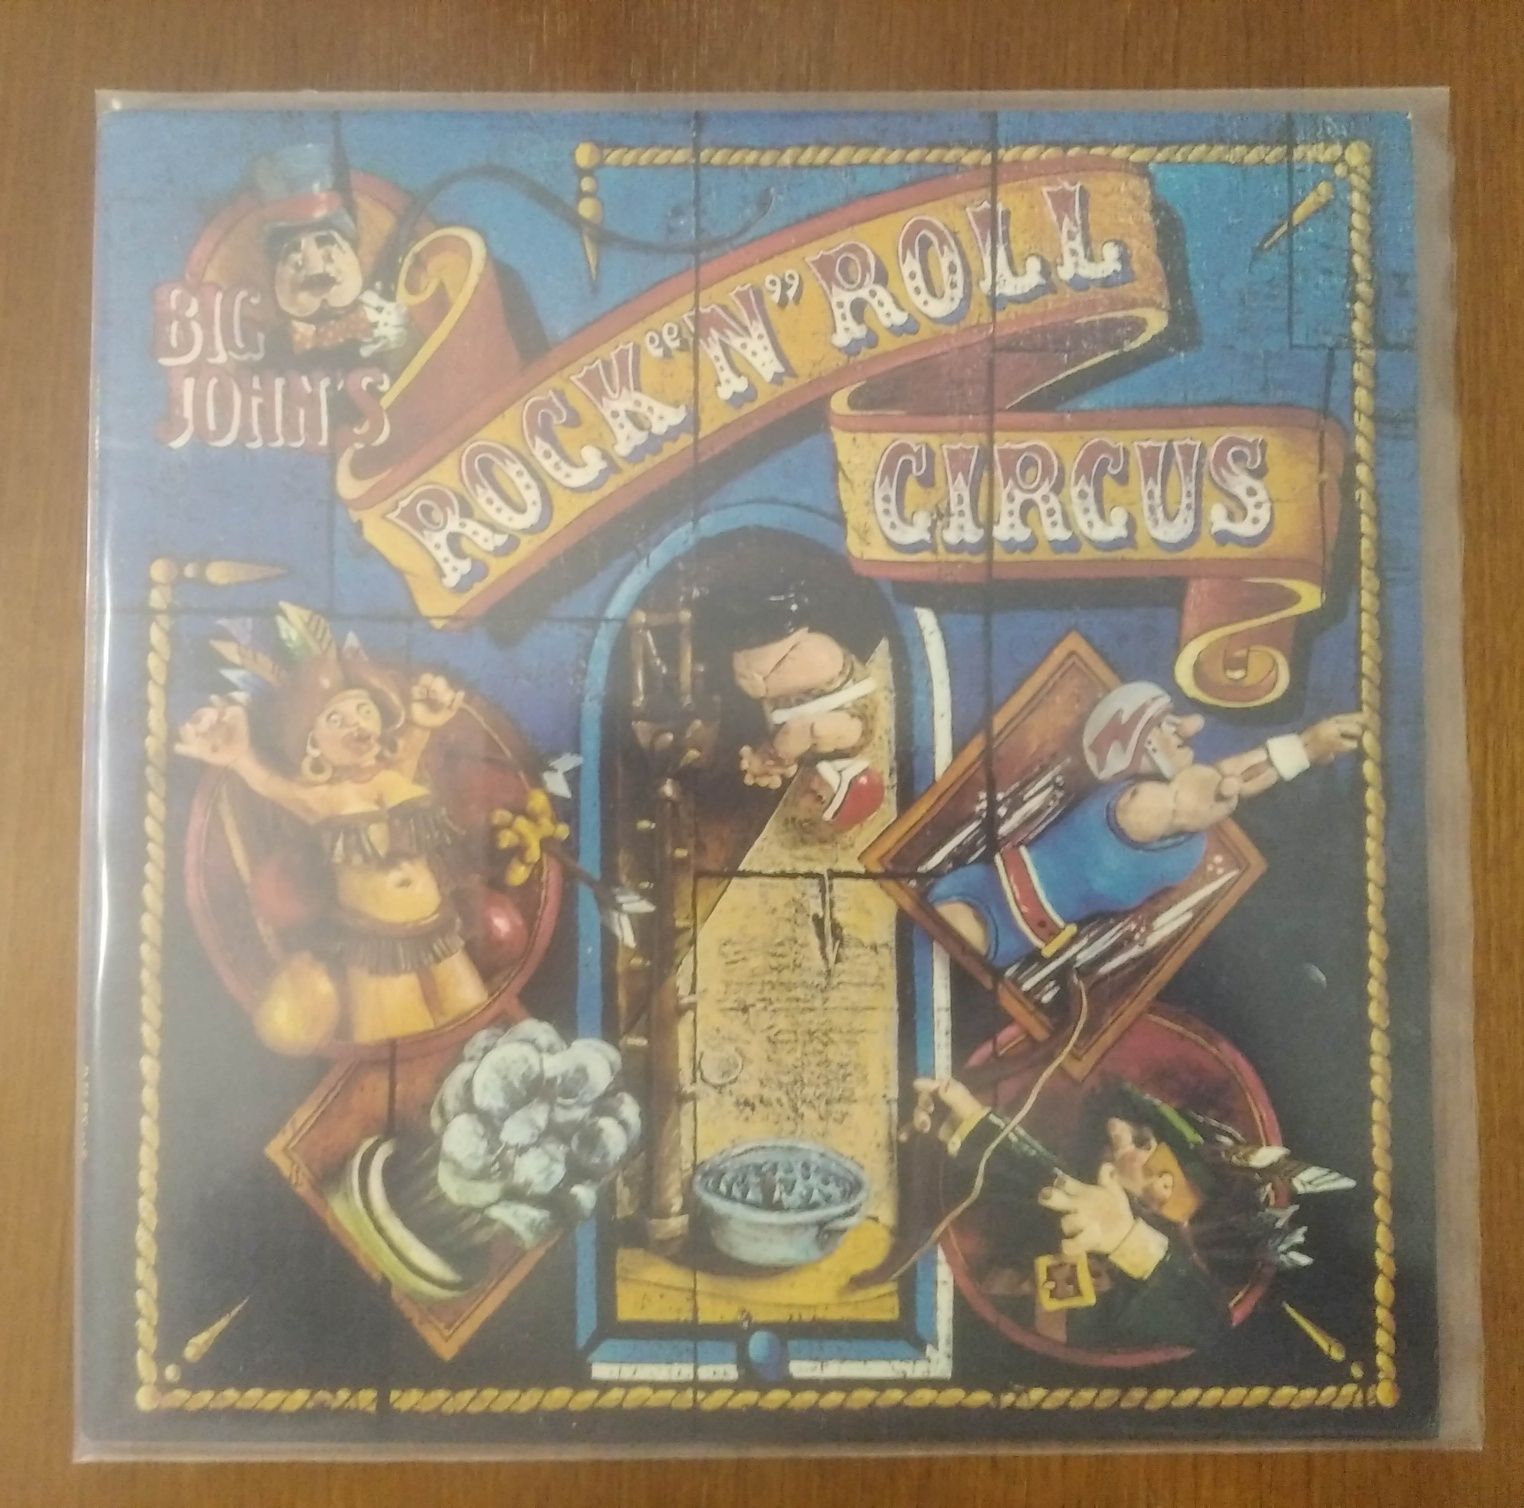 Big John's disco de vinil "Rock 'n' Roll Circus